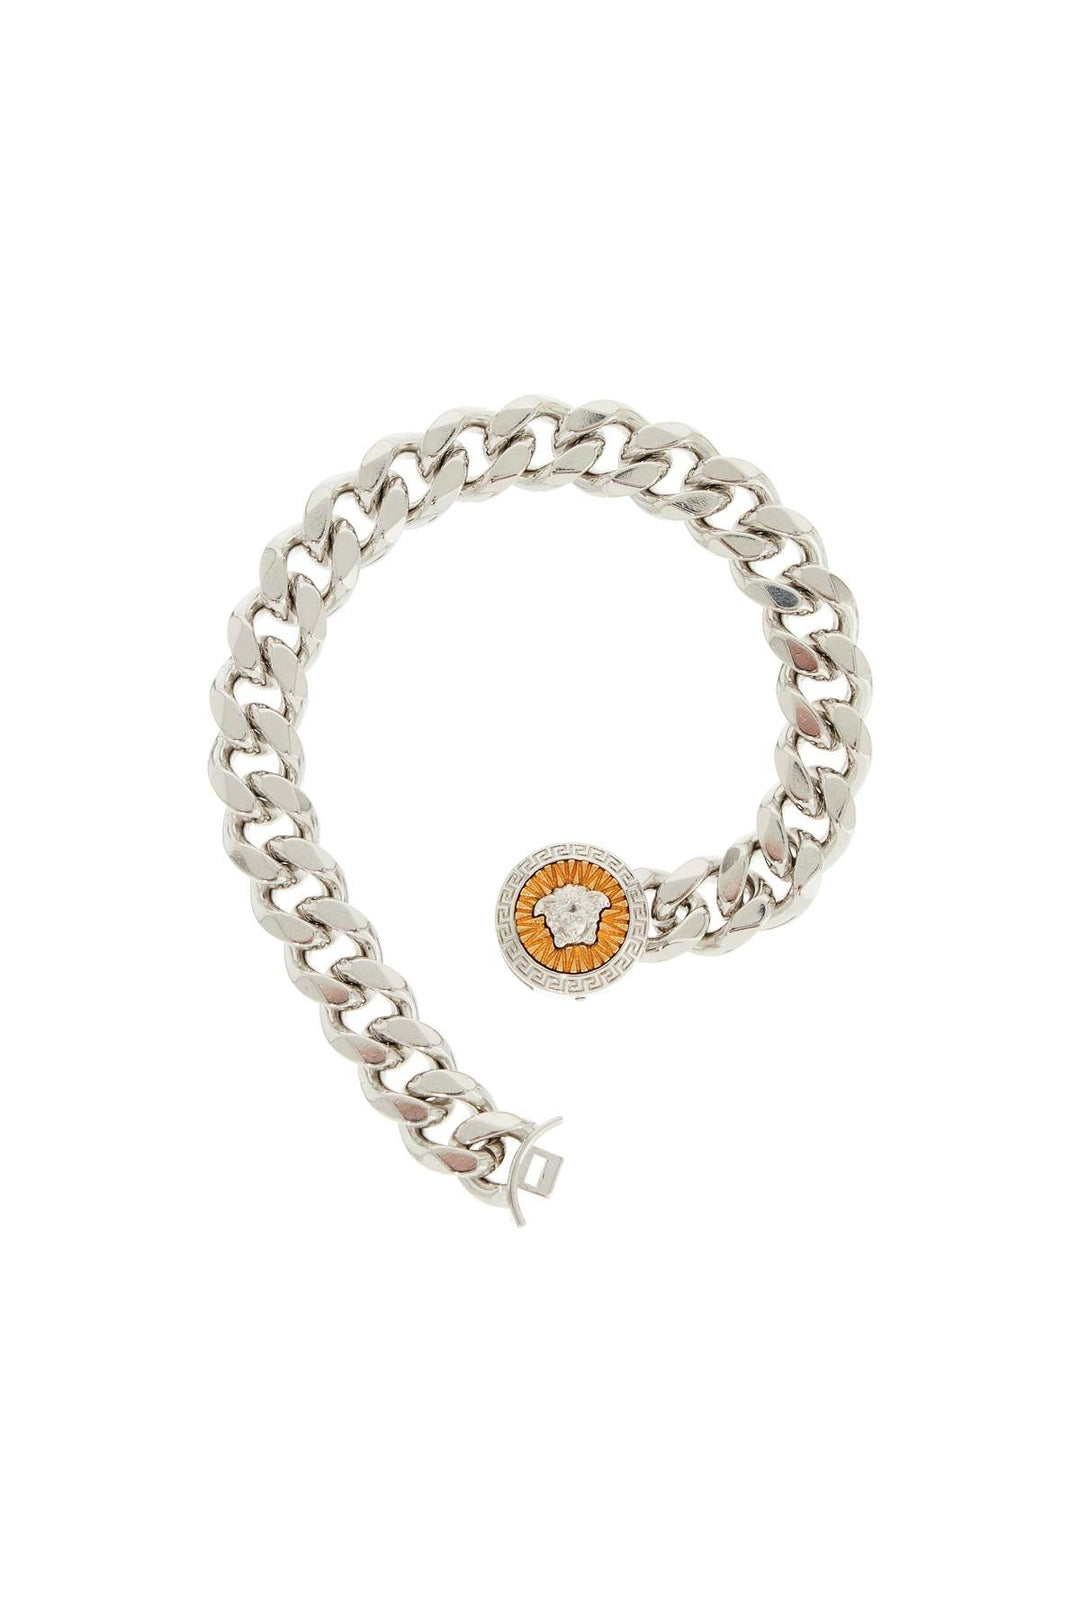 Versace "chain Bracelet With Medusa Charm (Size - L)